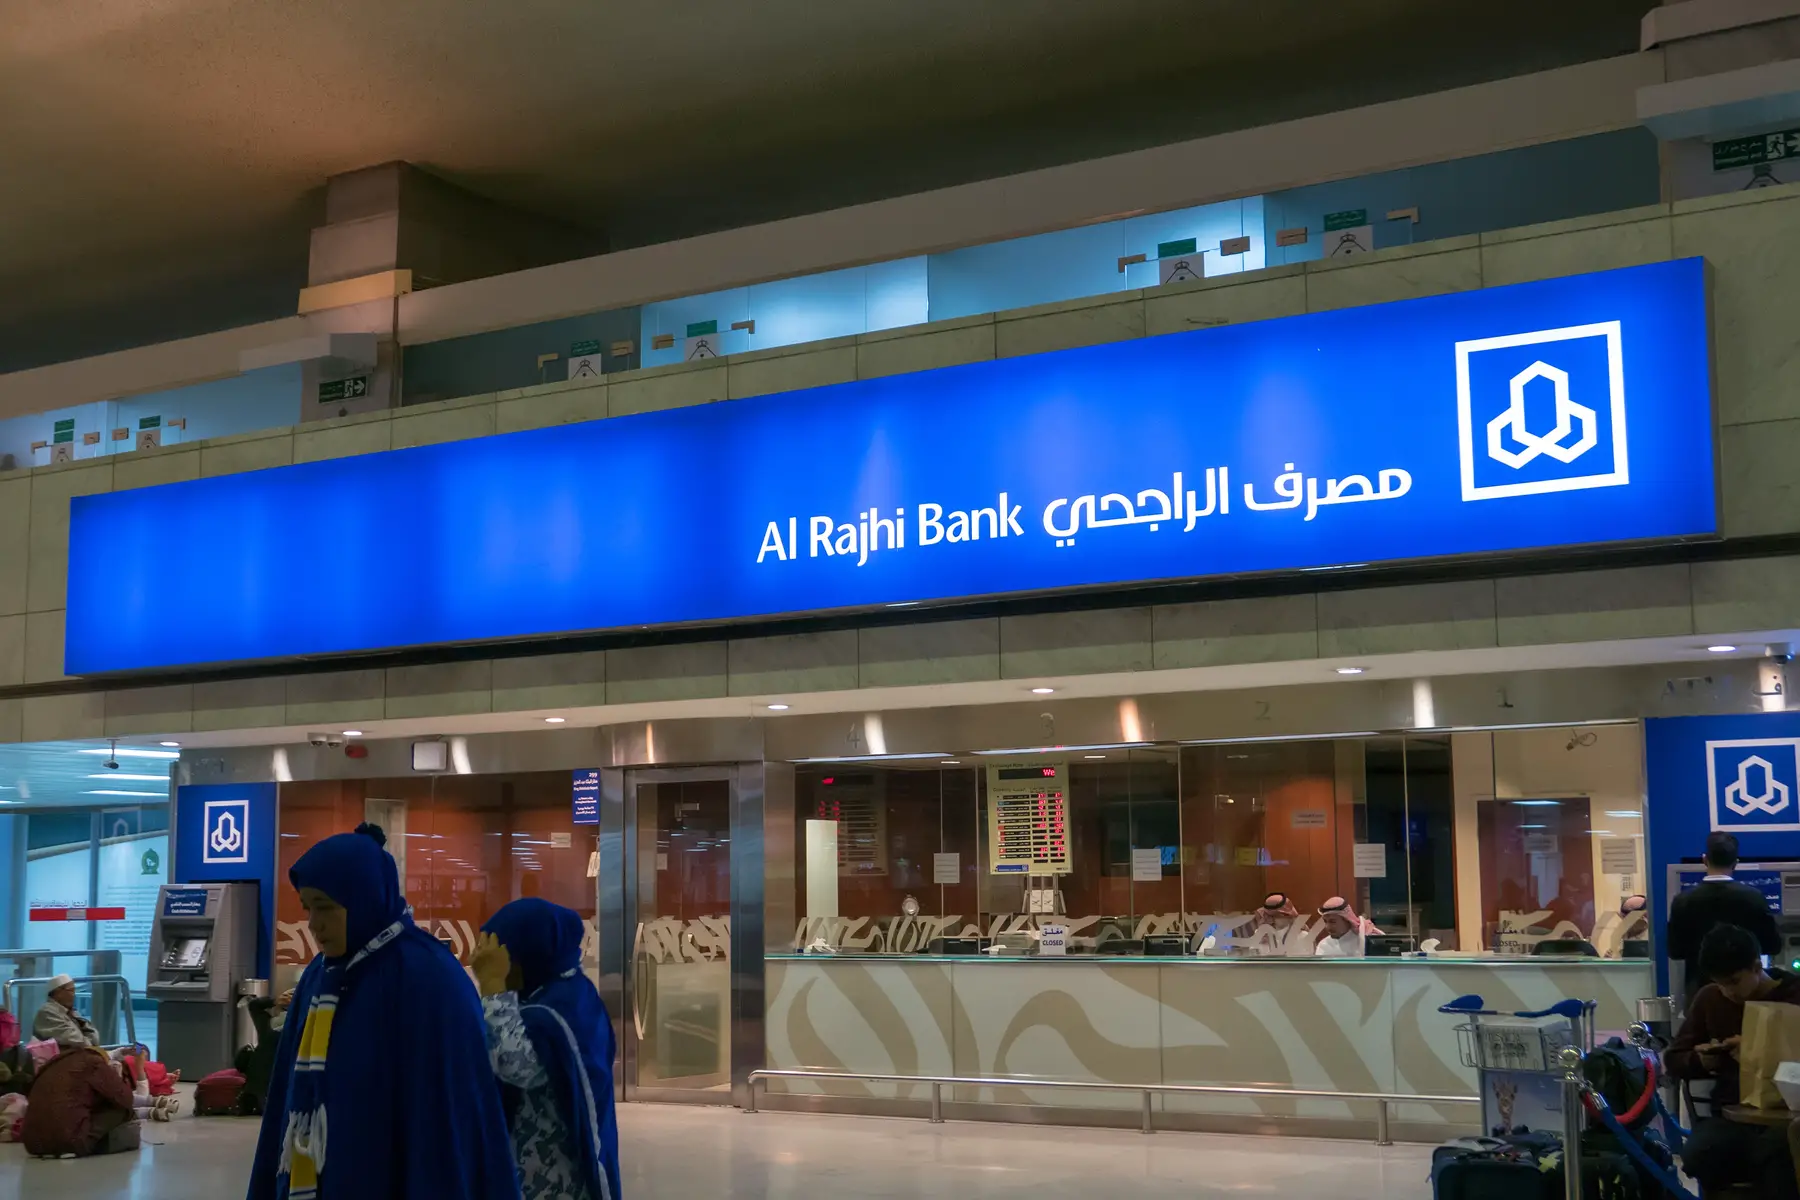 Al-Rajhi Bank branch